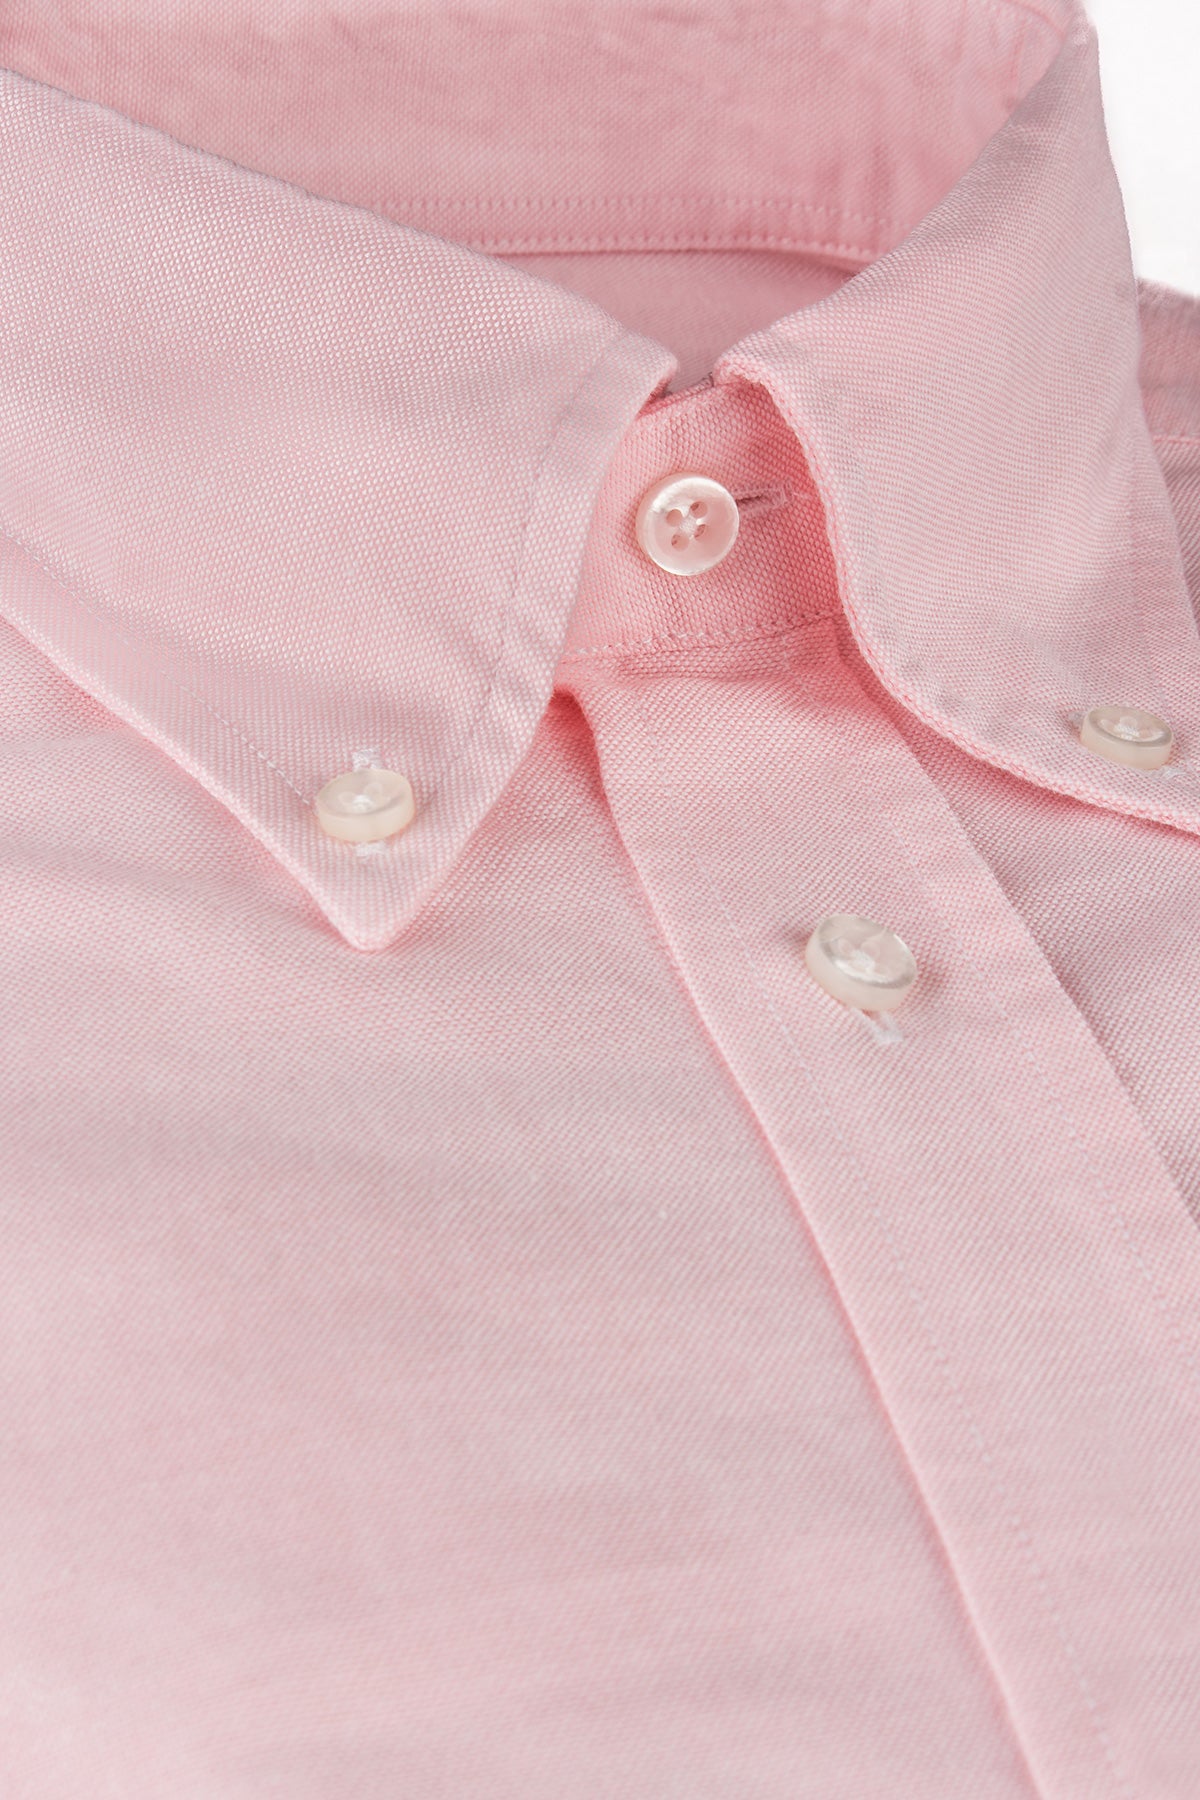 Pink button down oxford regular fit shirt